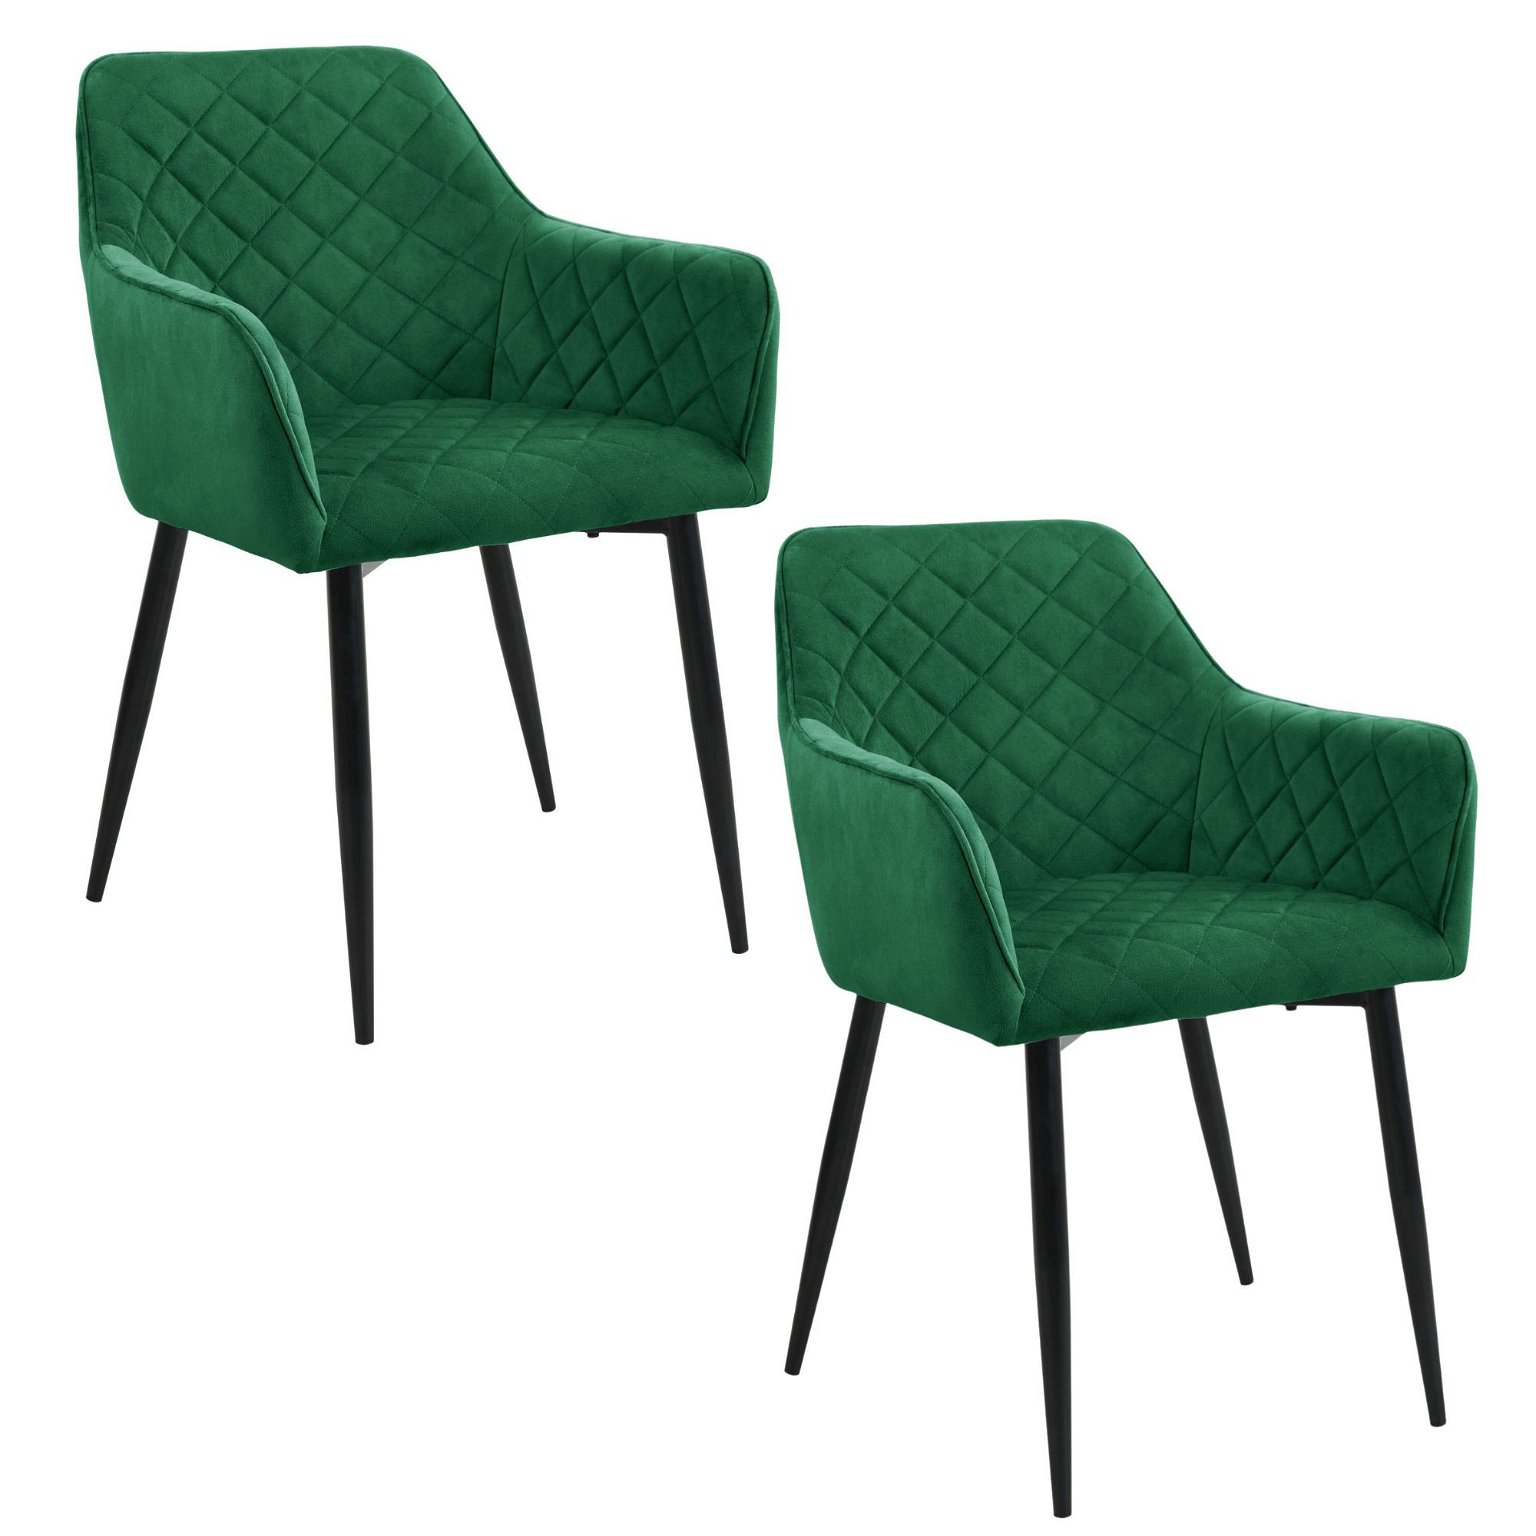 2-jų kėdžių komplektas SJ.082, žalia - 1